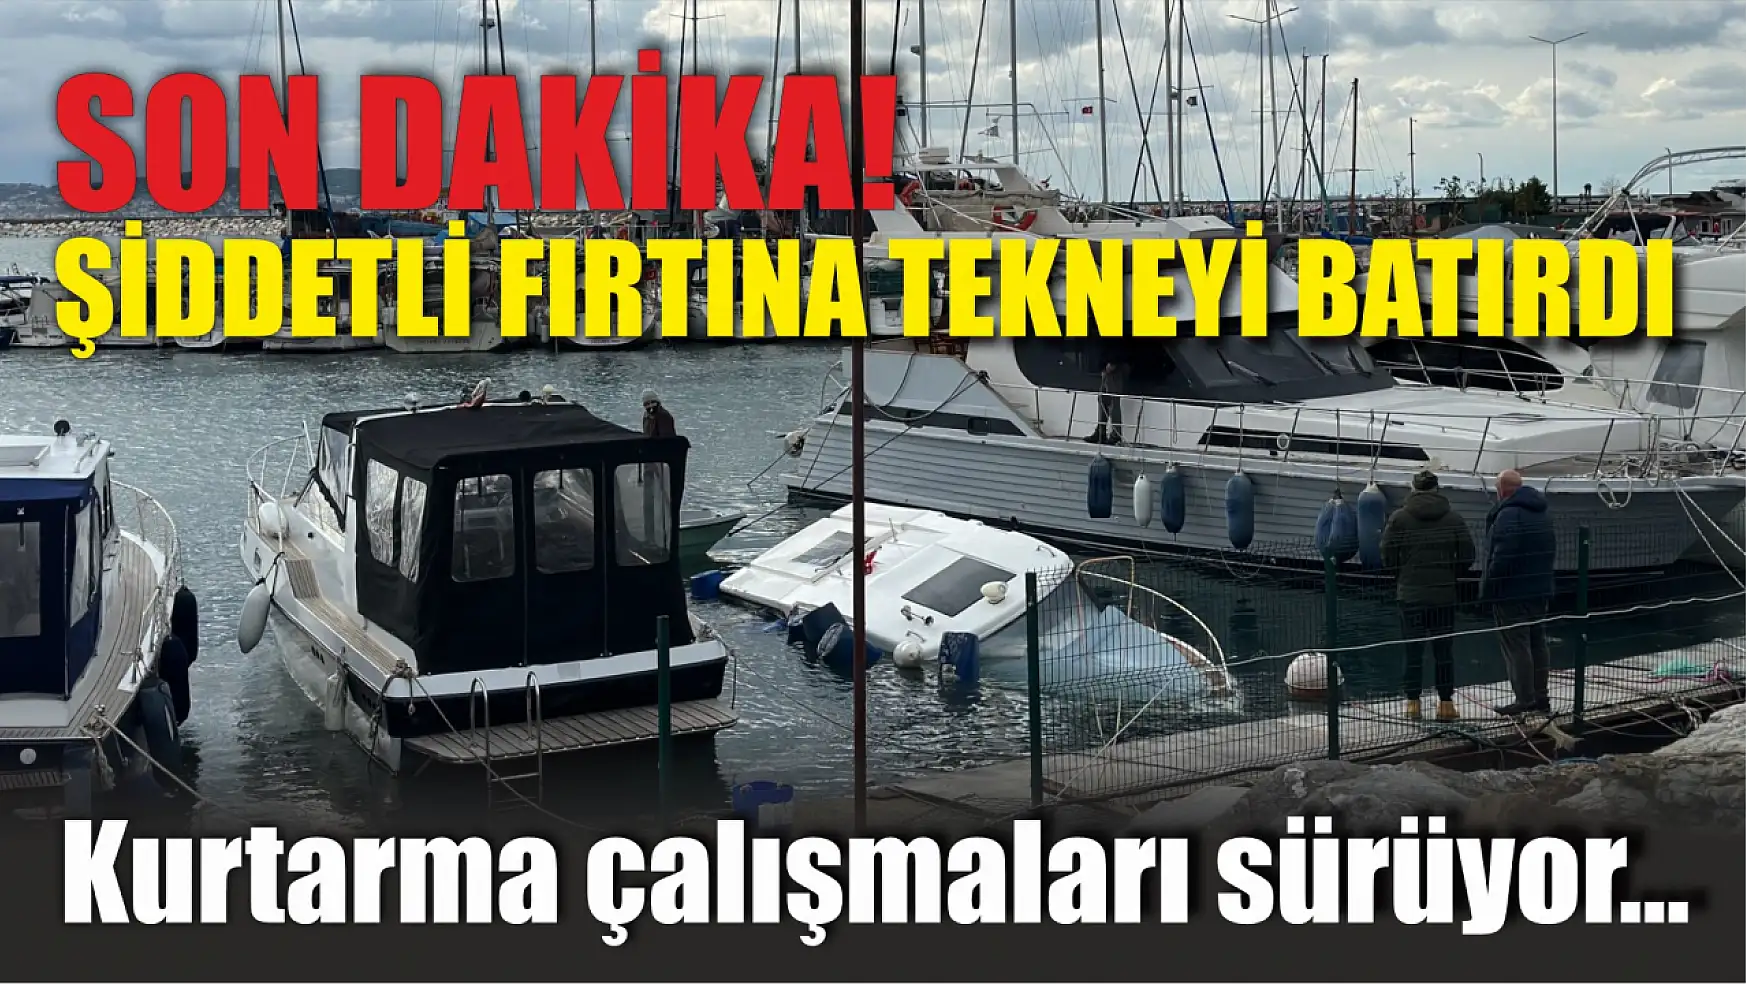 Son Dakika: İstanbul'da şiddetli fırtına tekneyi batırdı, Kurtarma çalışmaları sürüyor…